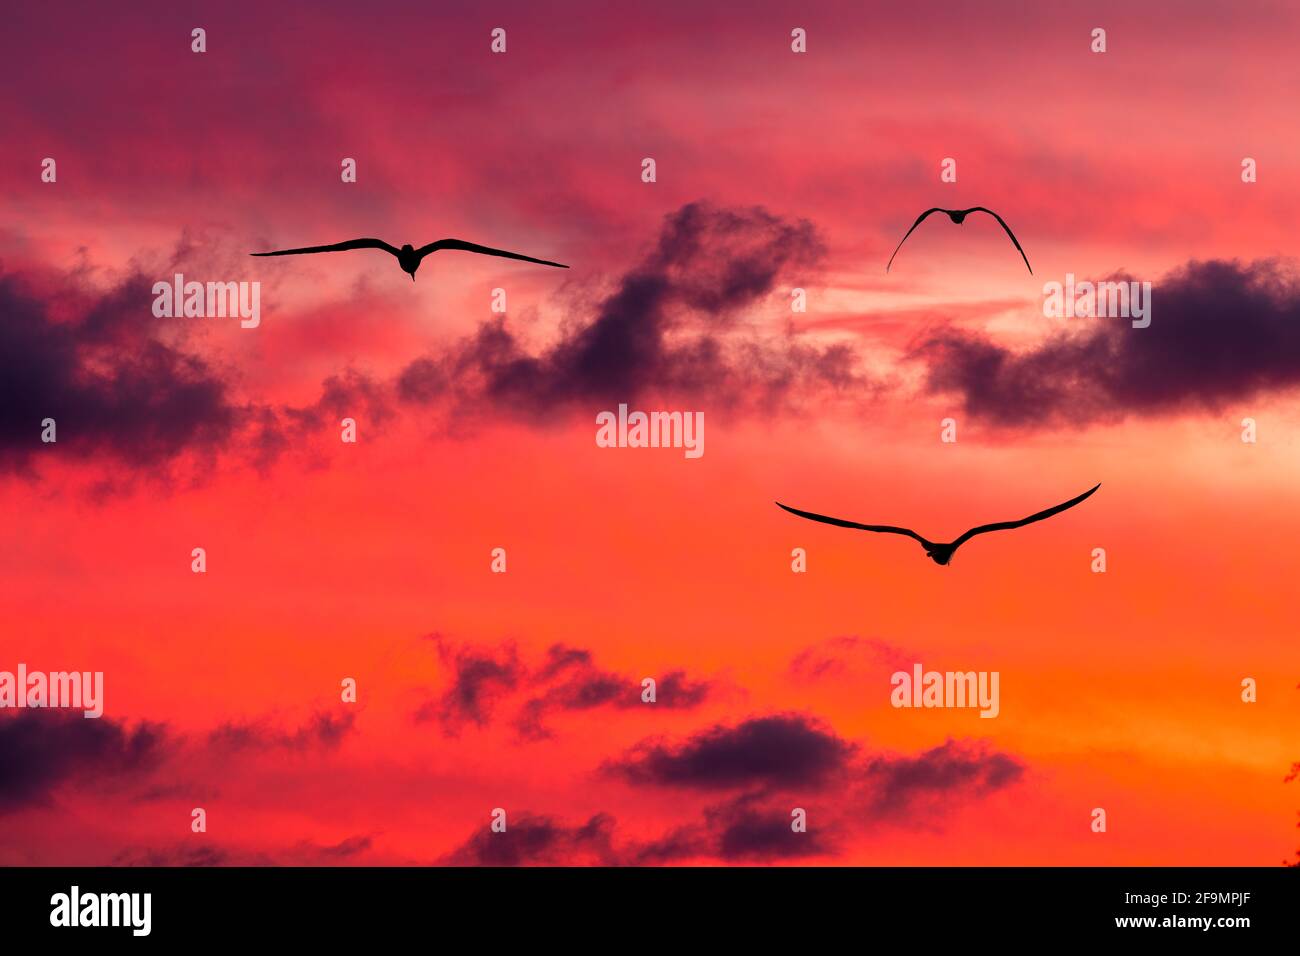 Trois oiseaux volantes dans le vibrant coucher de soleil rempli de nuages Ciel Banque D'Images